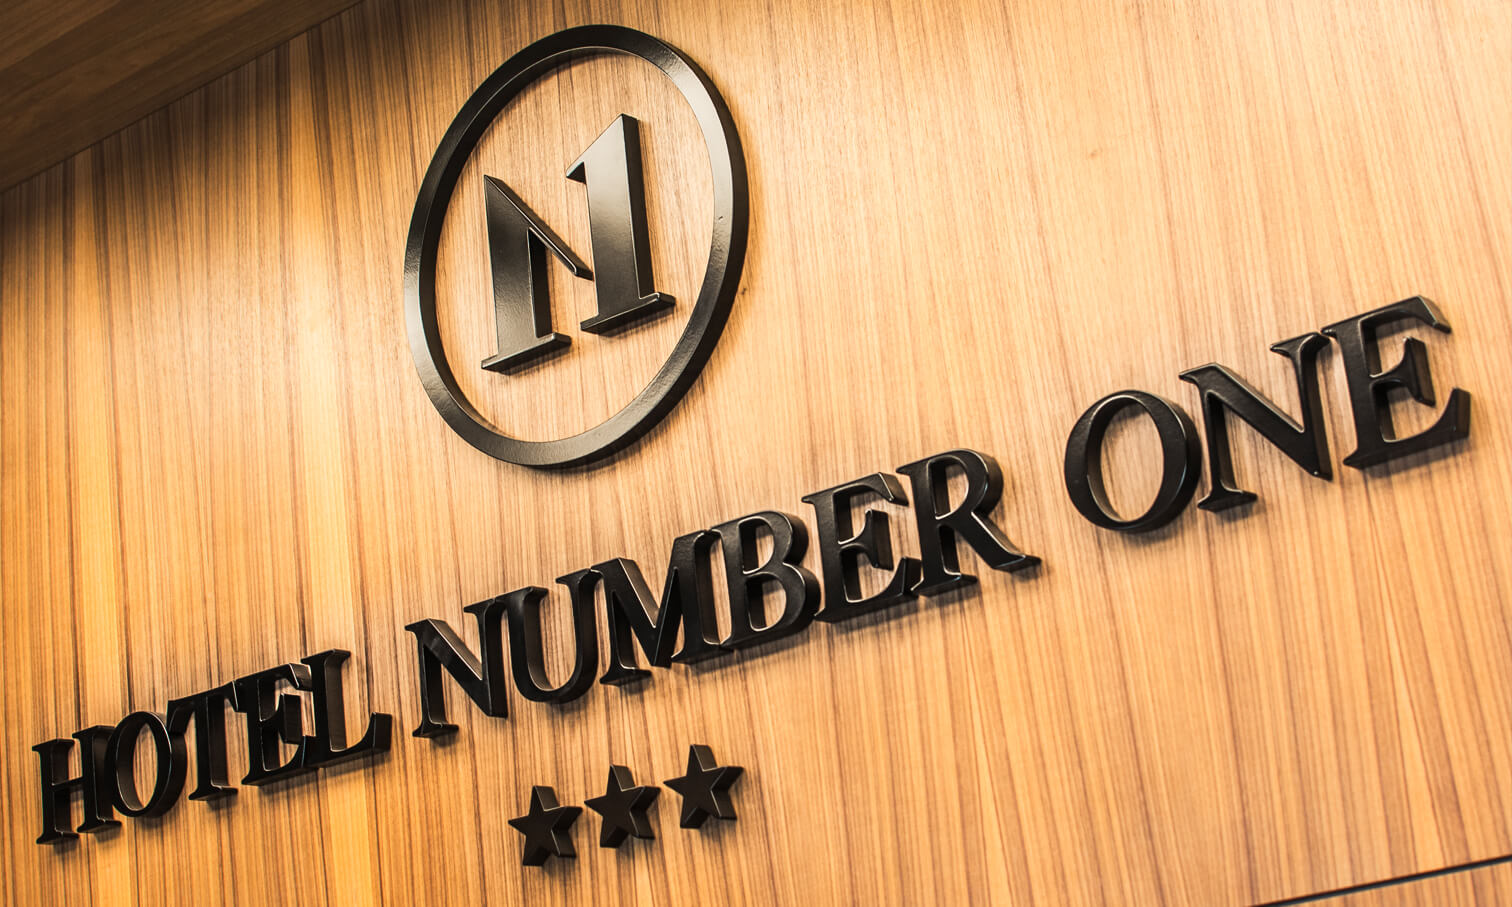 Hotel Number 1 - Hotel Number 1 - logo i litery przestrzenne malowane umieszczone w recepcji hotelu